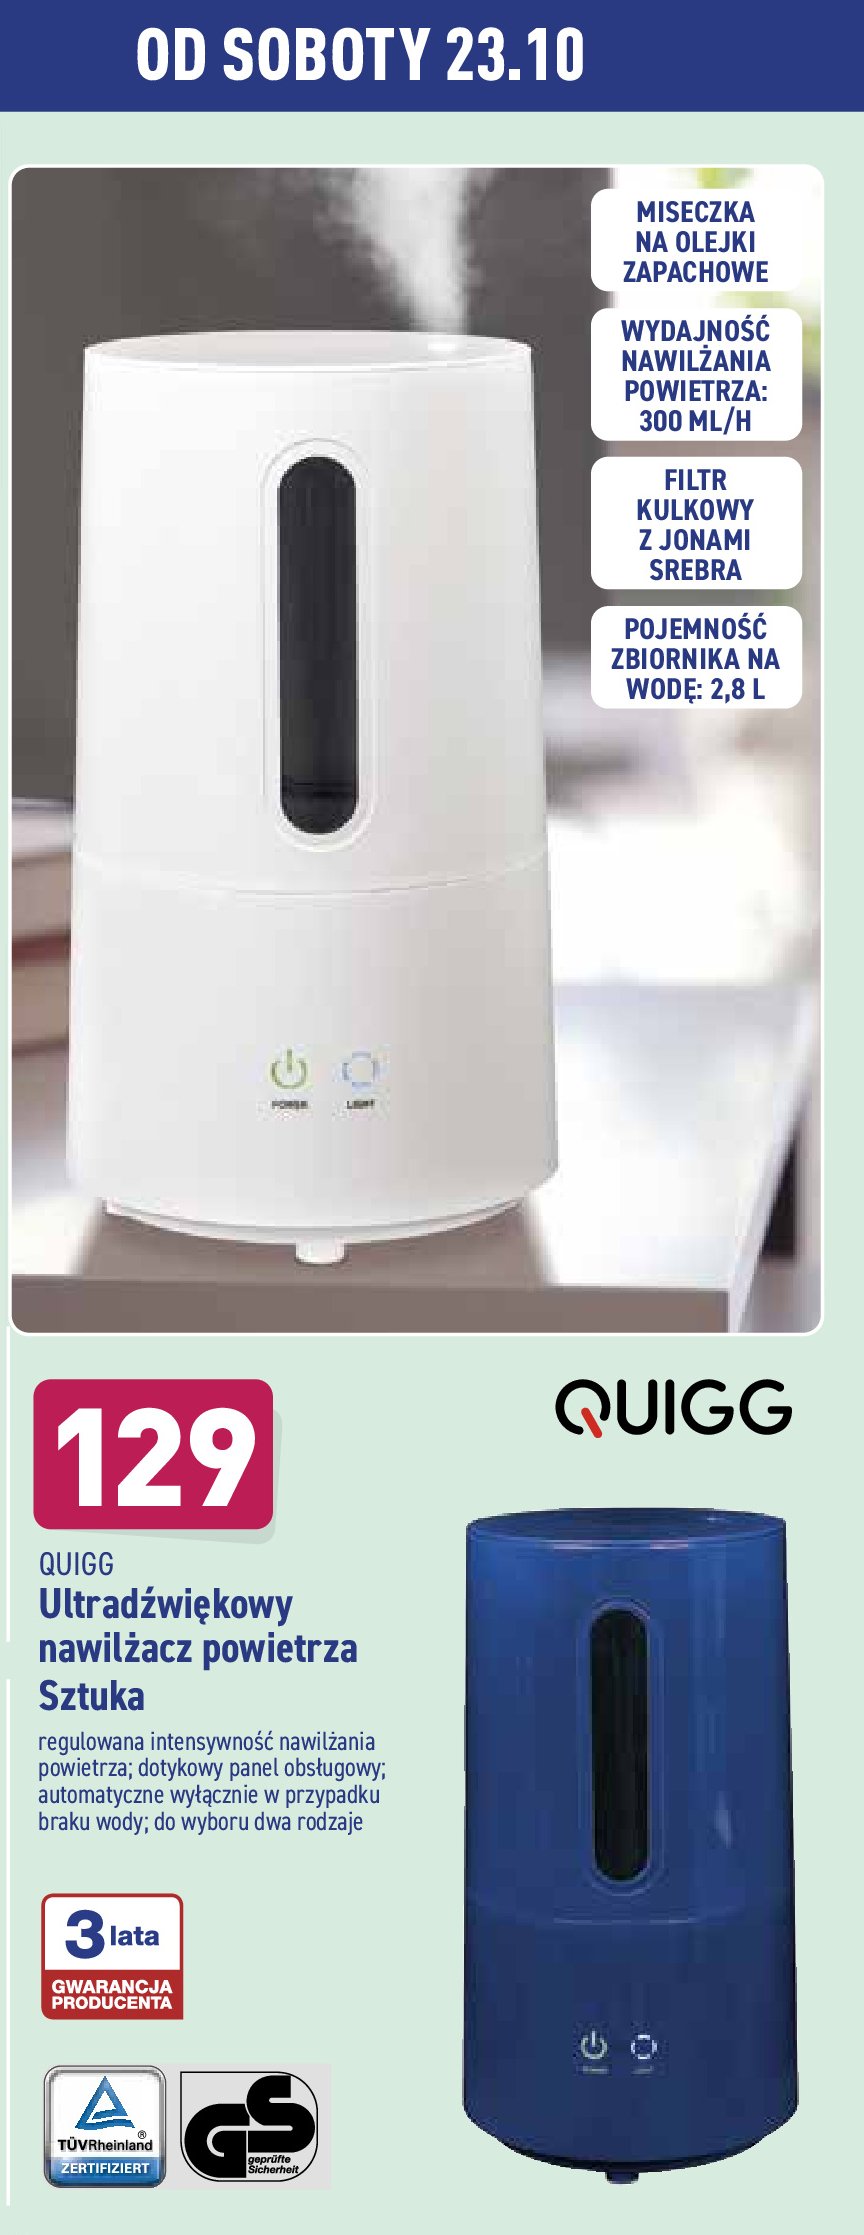 Ultradźwiękowy nawilżacz powietrza Quigg promocja